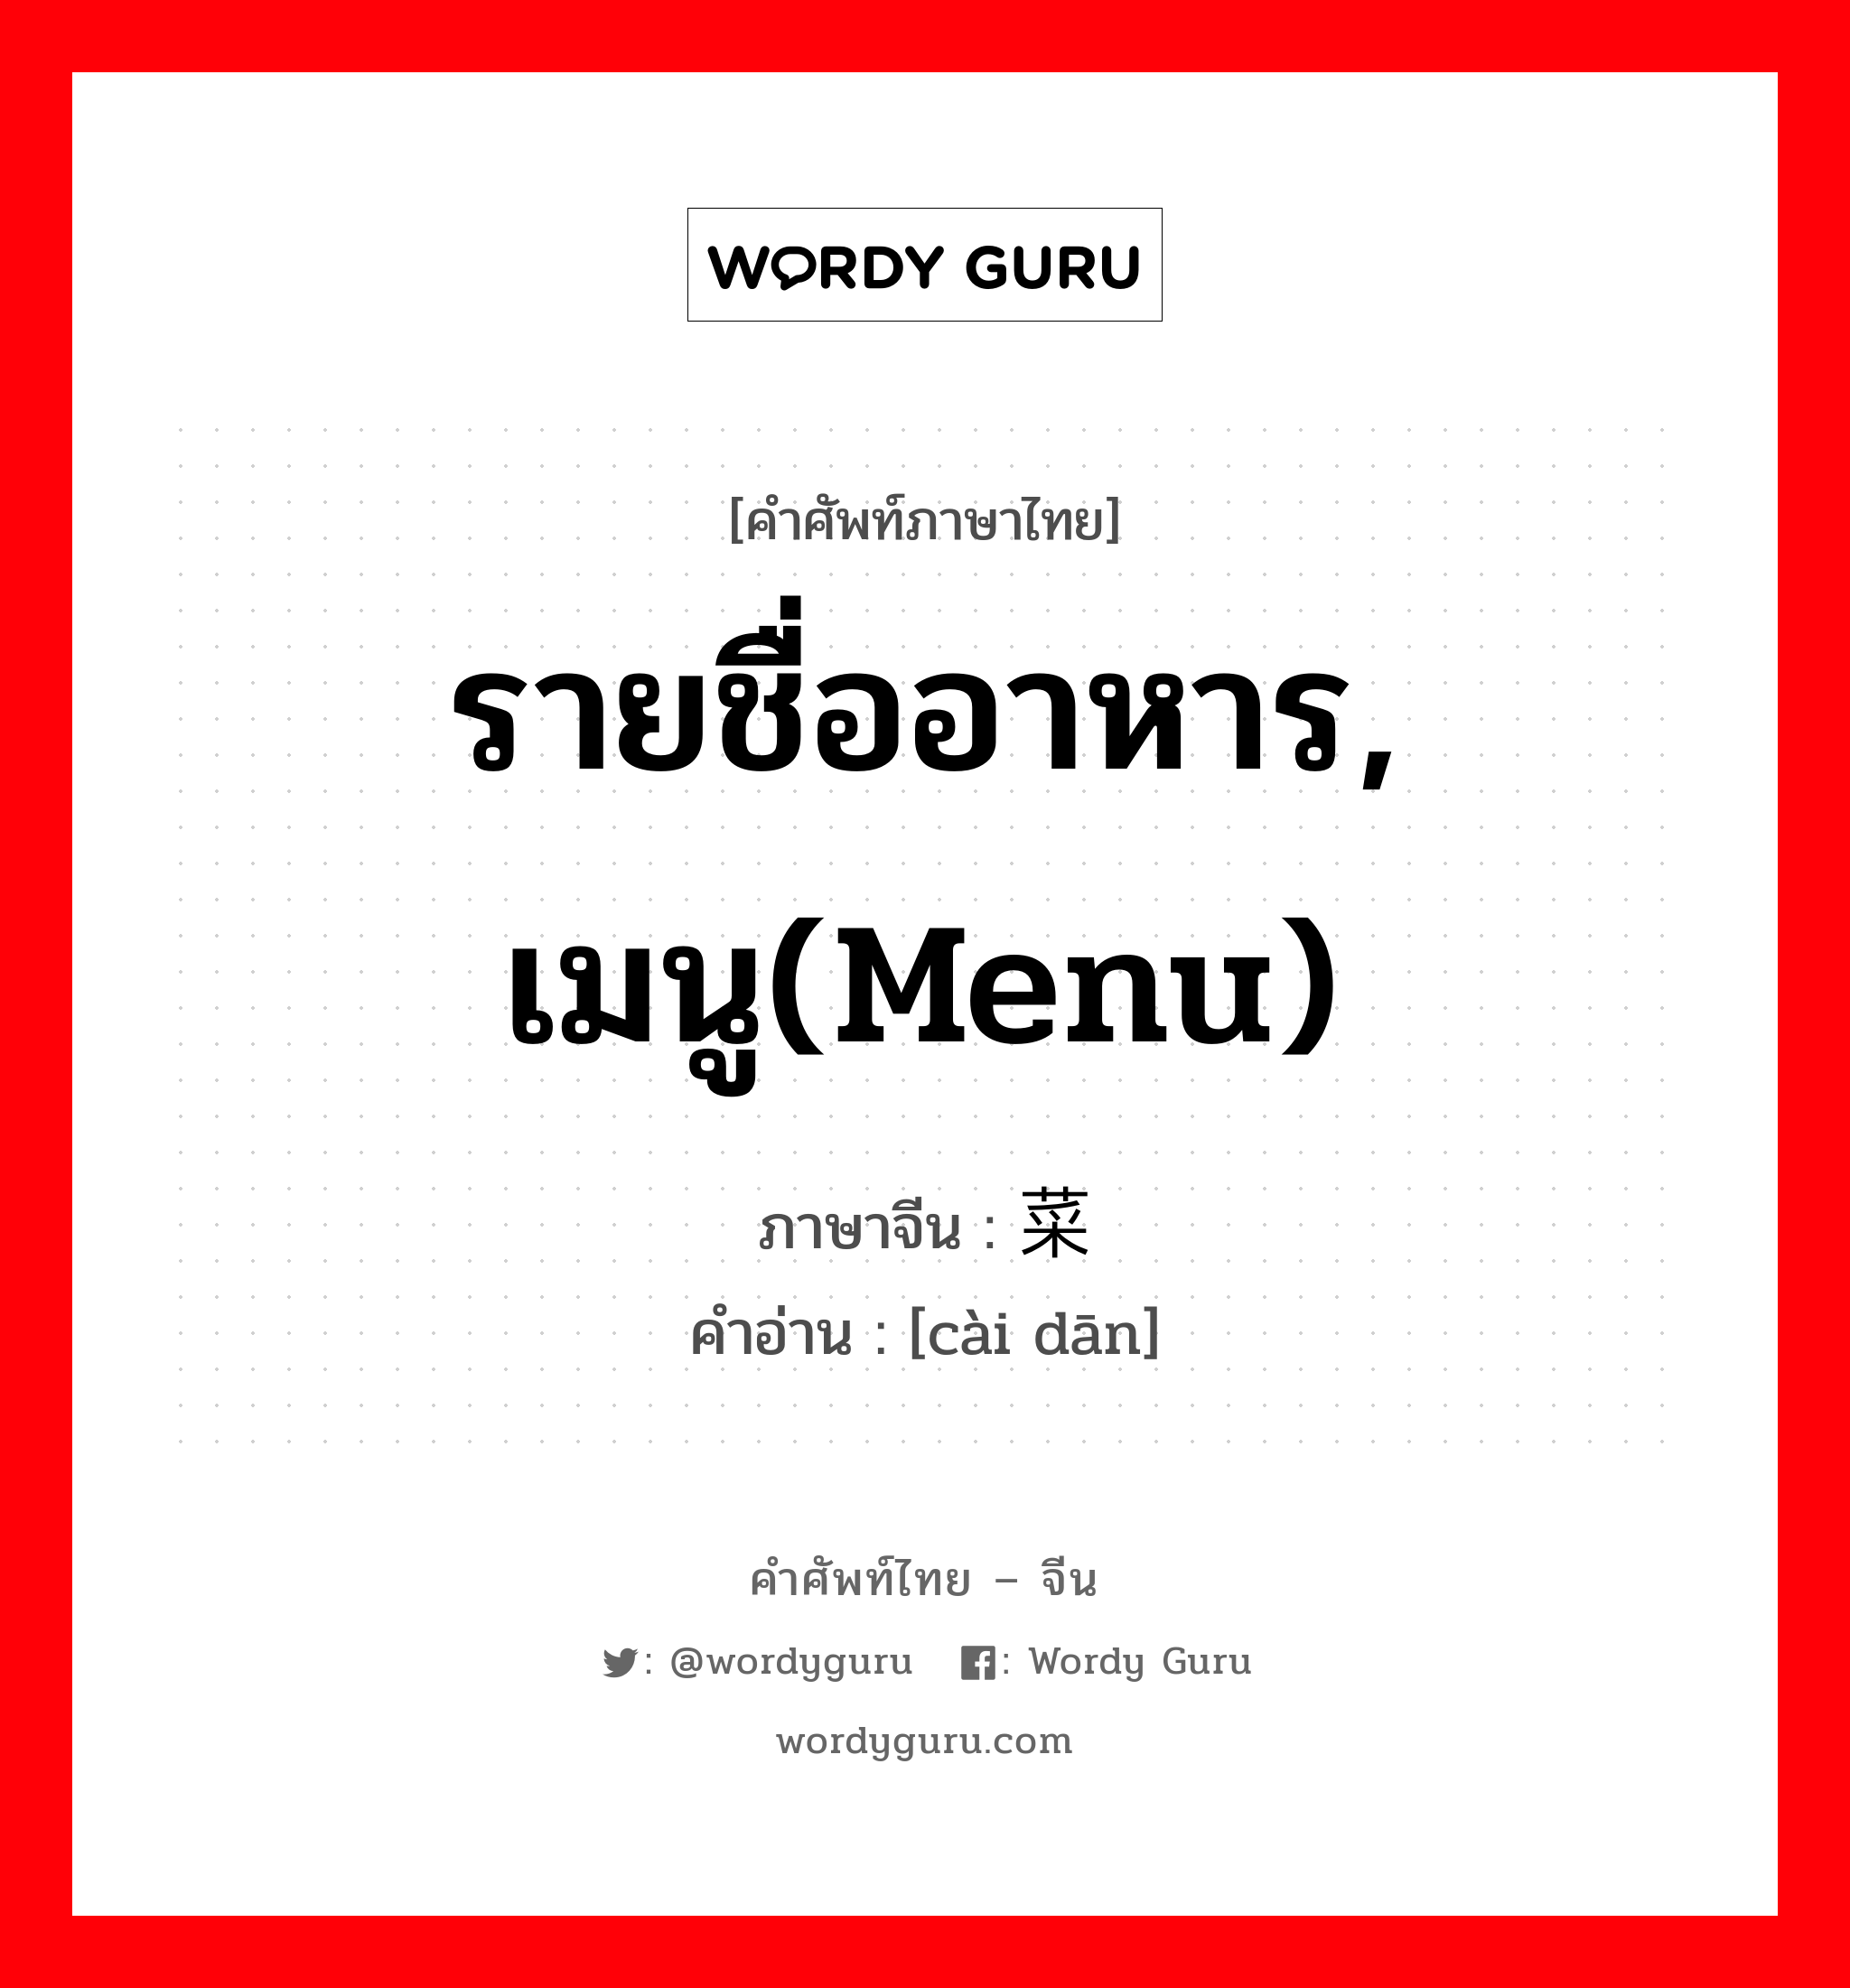 รายชื่ออาหาร, เมนู(menu) ภาษาจีนคืออะไร, คำศัพท์ภาษาไทย - จีน รายชื่ออาหาร, เมนู(menu) ภาษาจีน 菜单 คำอ่าน [cài dān]